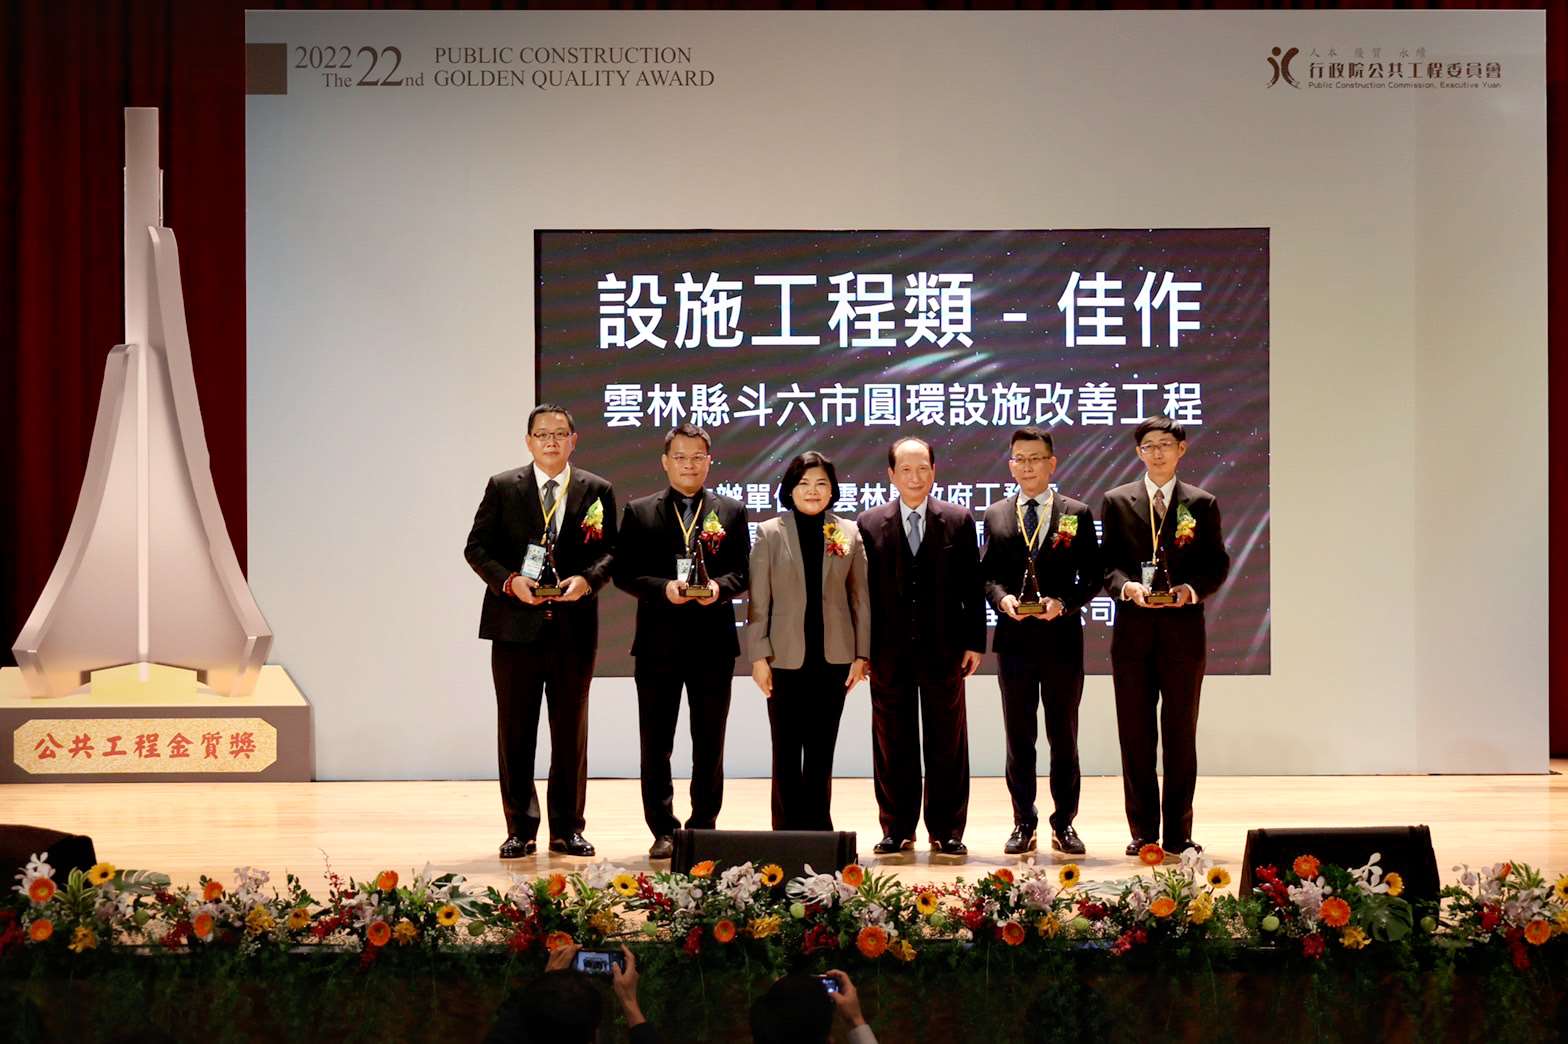 雲林縣政府奪下公共工程委員會第 22 屆公共工程金質獎三獎項